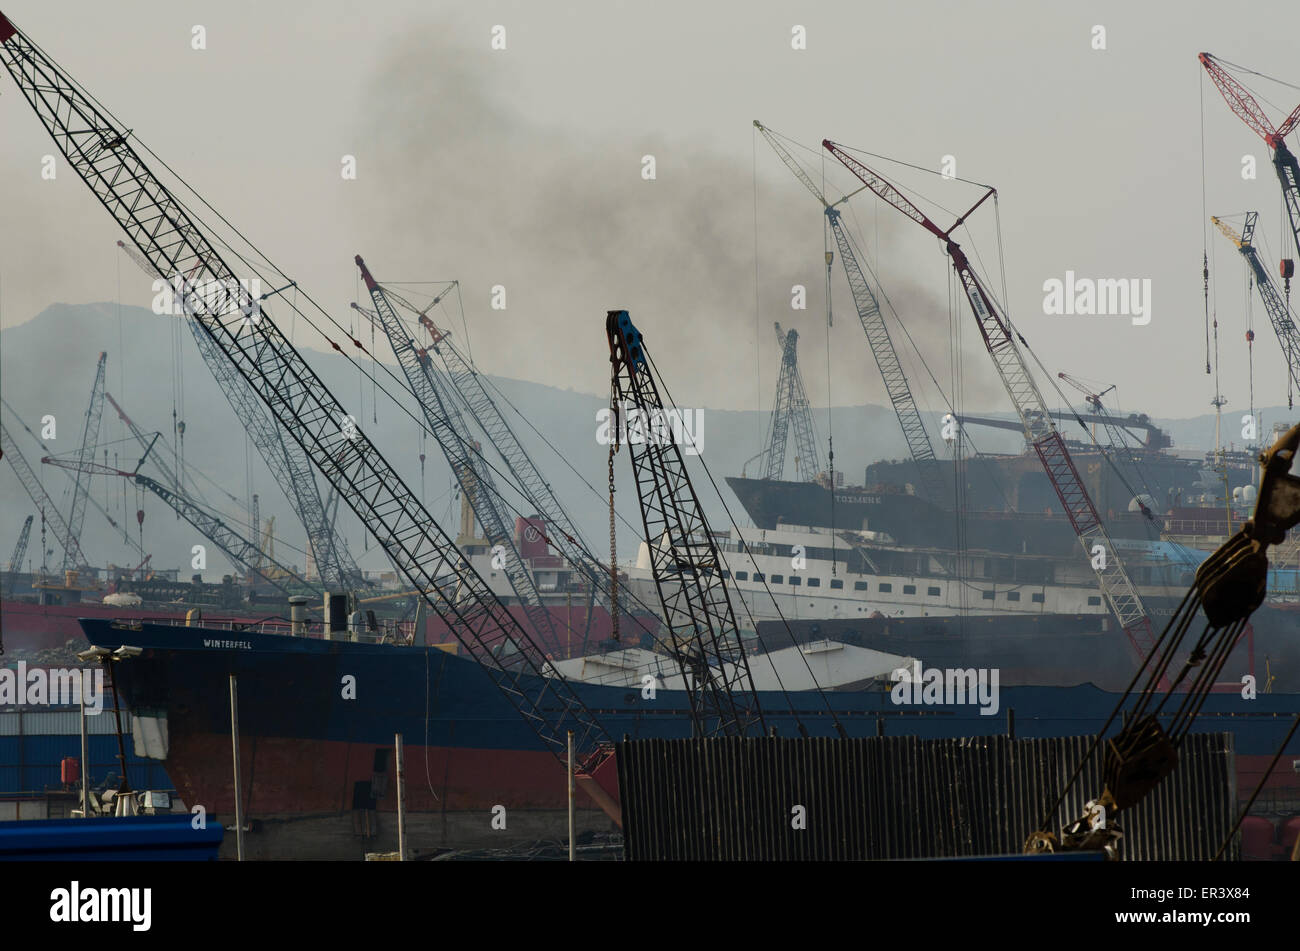 Chantiers de démolition des navires turcs à Aliaga près de Izmir Turquie Banque D'Images